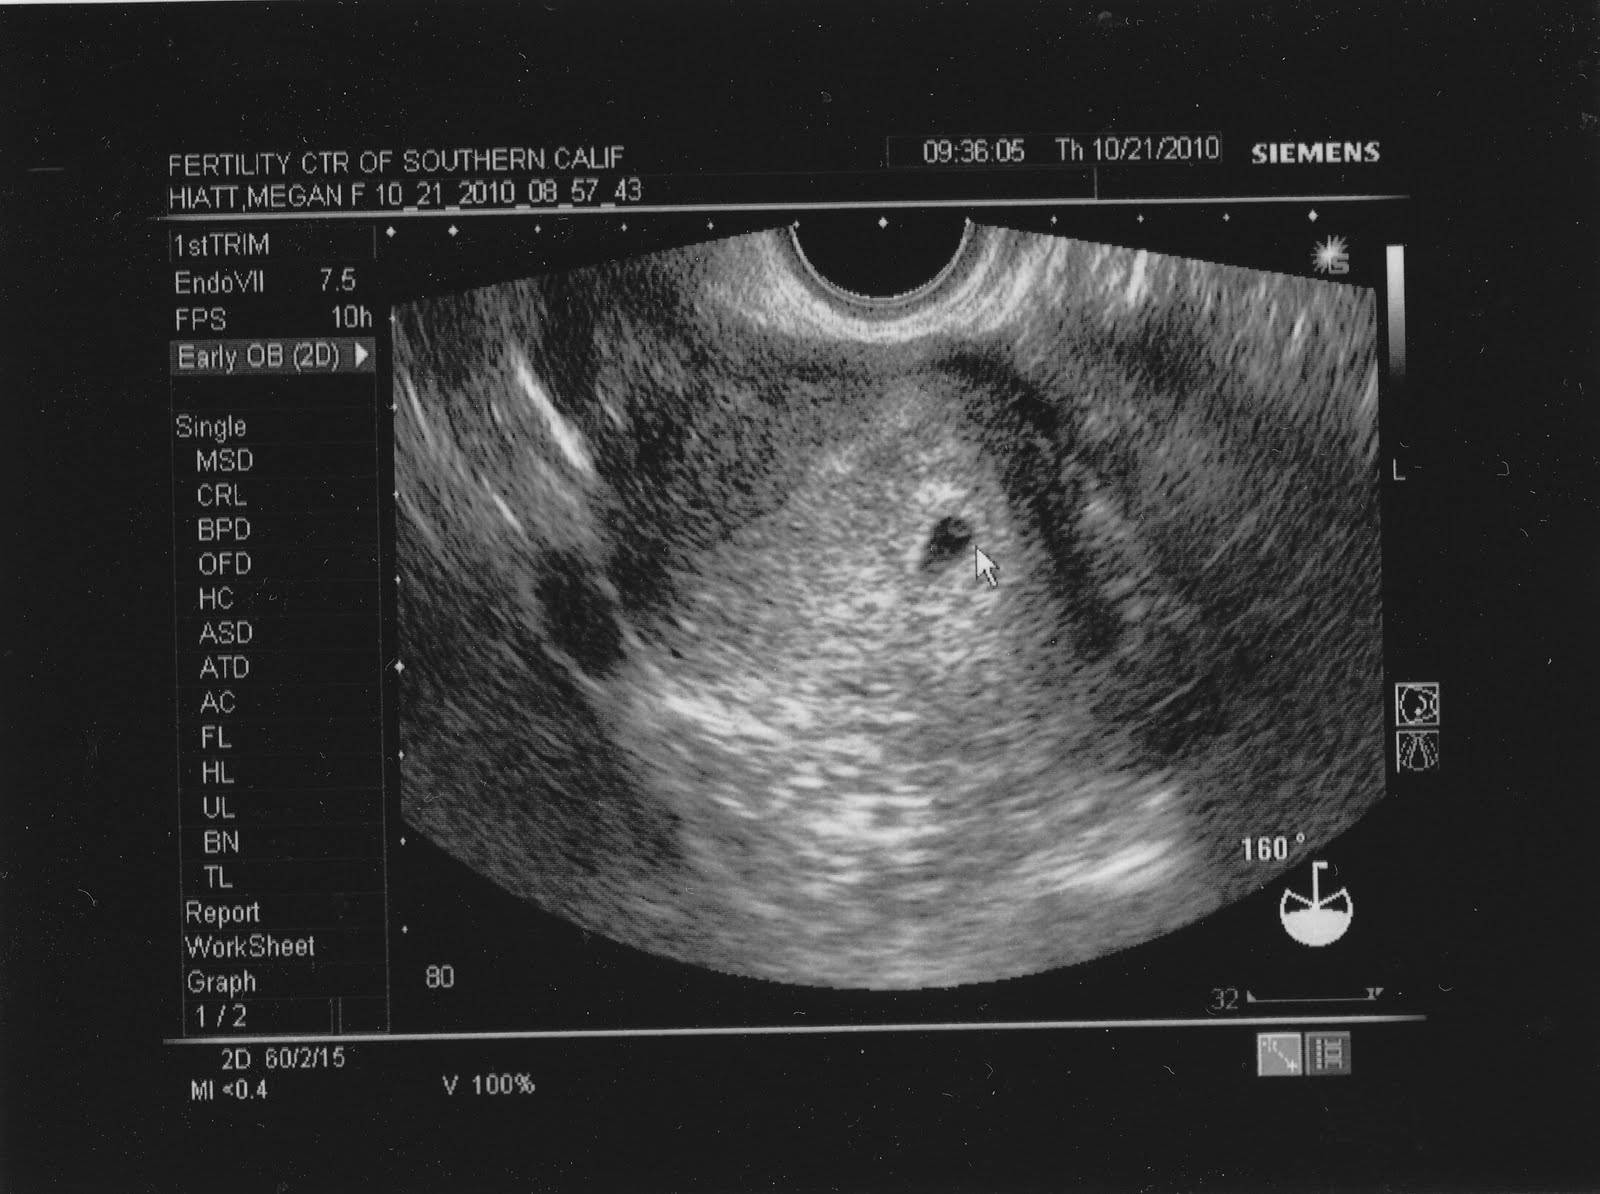 Как выглядит плод в 4 5 недель беременности фото